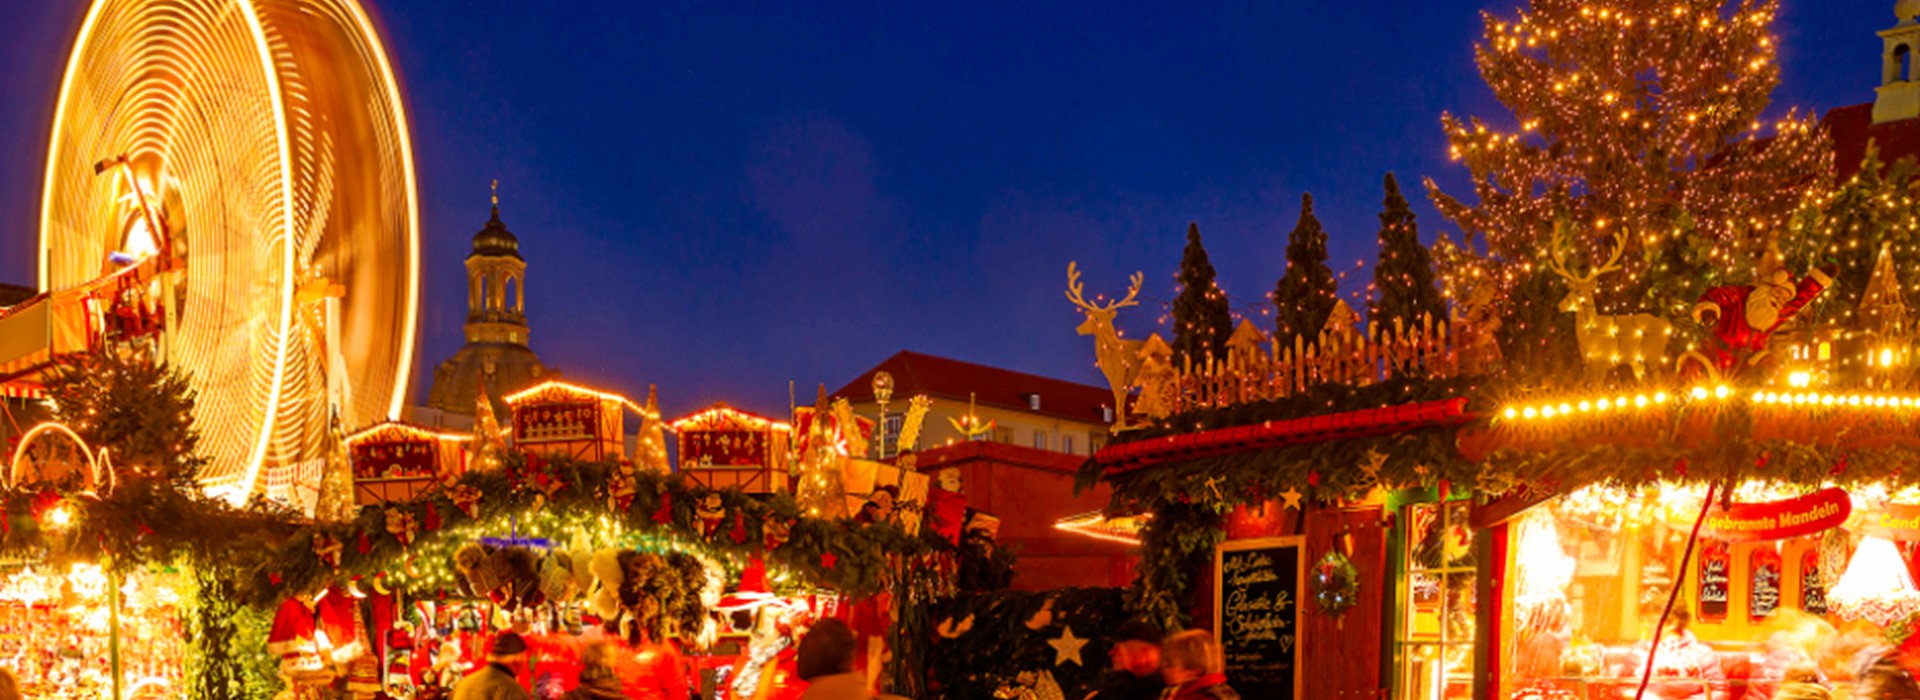 tourhub | Newmarket Holidays | Dresden Christmas Markets 